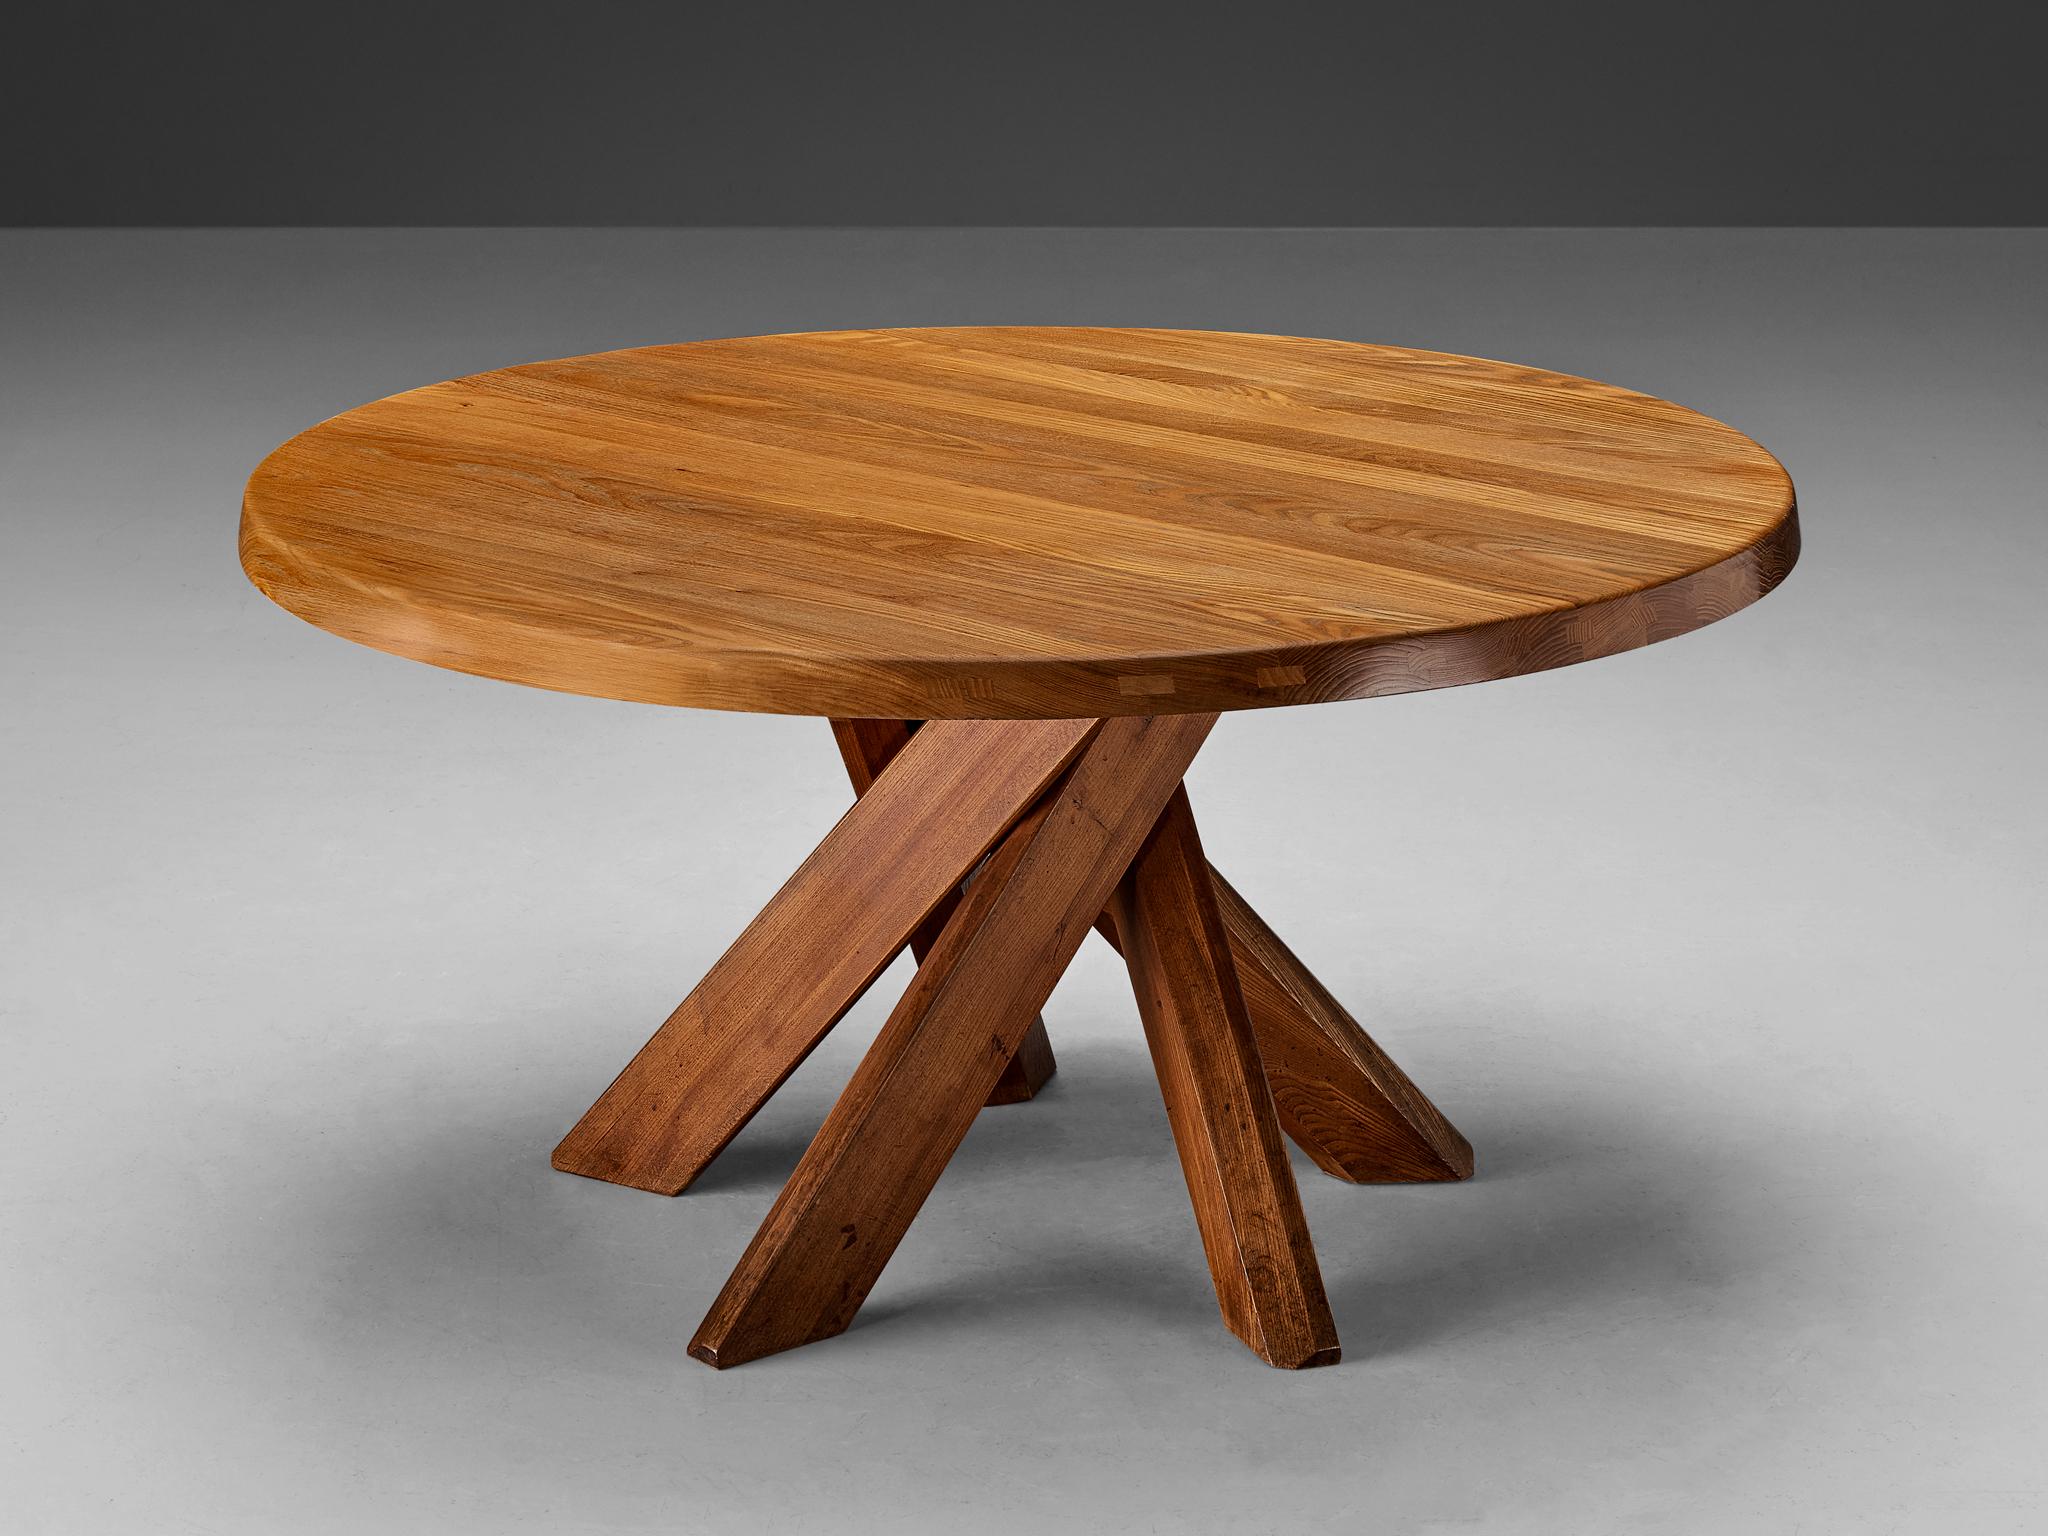 Pierre Chapo, table de salle à manger modèle 'T21 D', orme, France, années 1970

Cette table est l'une des premières éditions conçues par Pierre Chapo, connu pour son utilisation caractéristique du bois d'orme massif et son engagement en faveur de